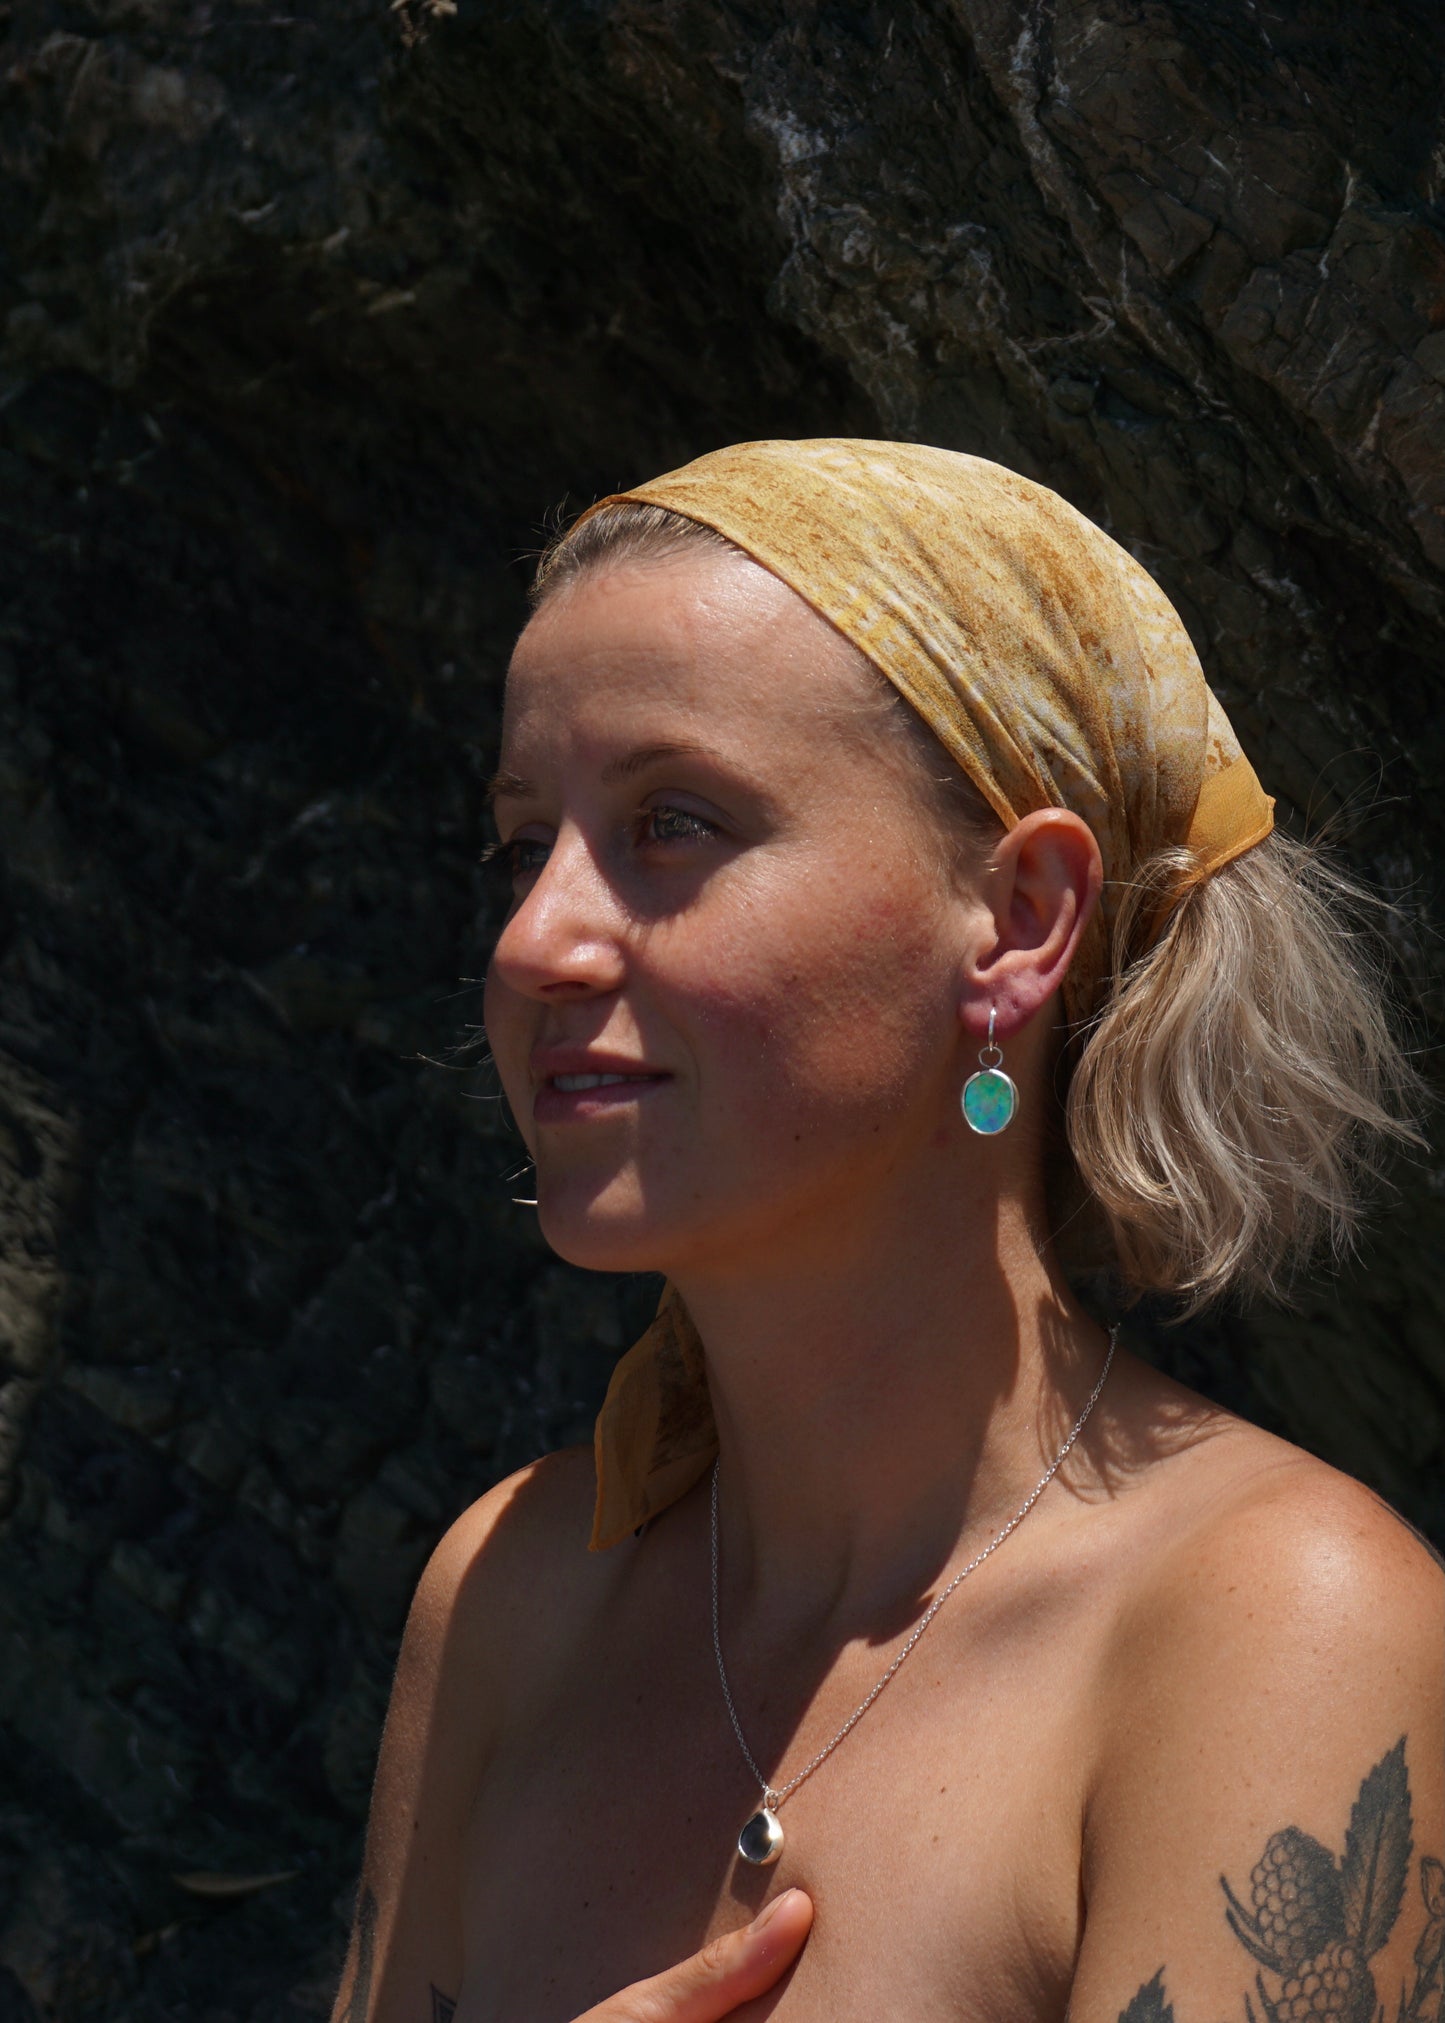 Pāua People Earrings